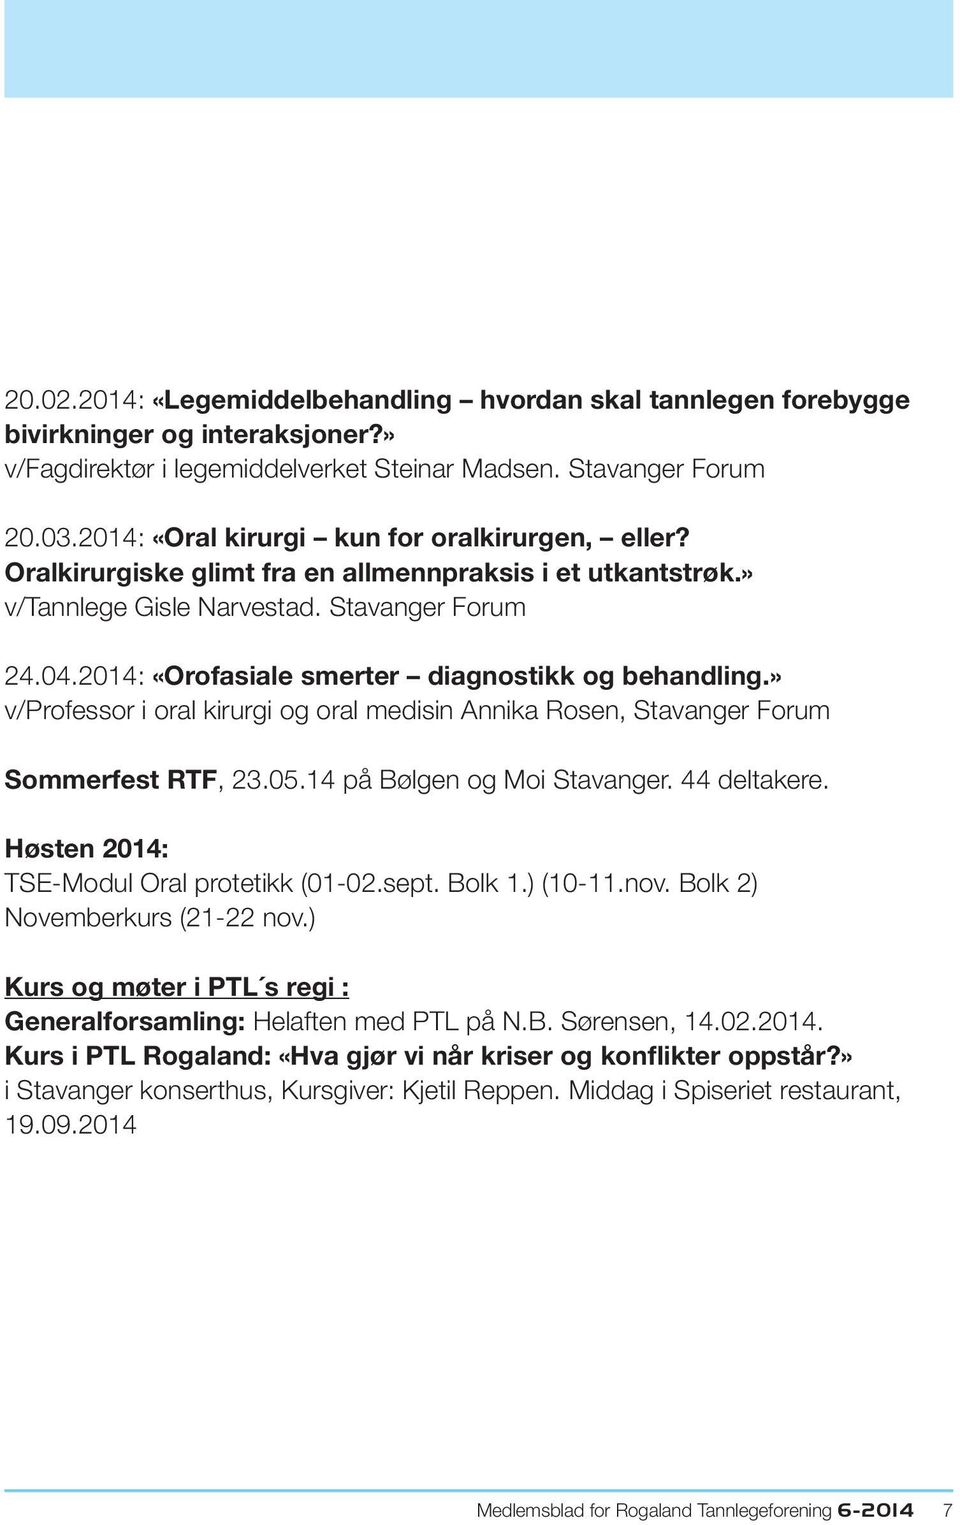 2014: «Orofasiale smerter diagnostikk og behandling.» v/professor i oral kirurgi og oral medisin Annika Rosen, Stavanger Forum Sommerfest RTF, 23.05.14 på Bølgen og Moi Stavanger. 44 deltakere.